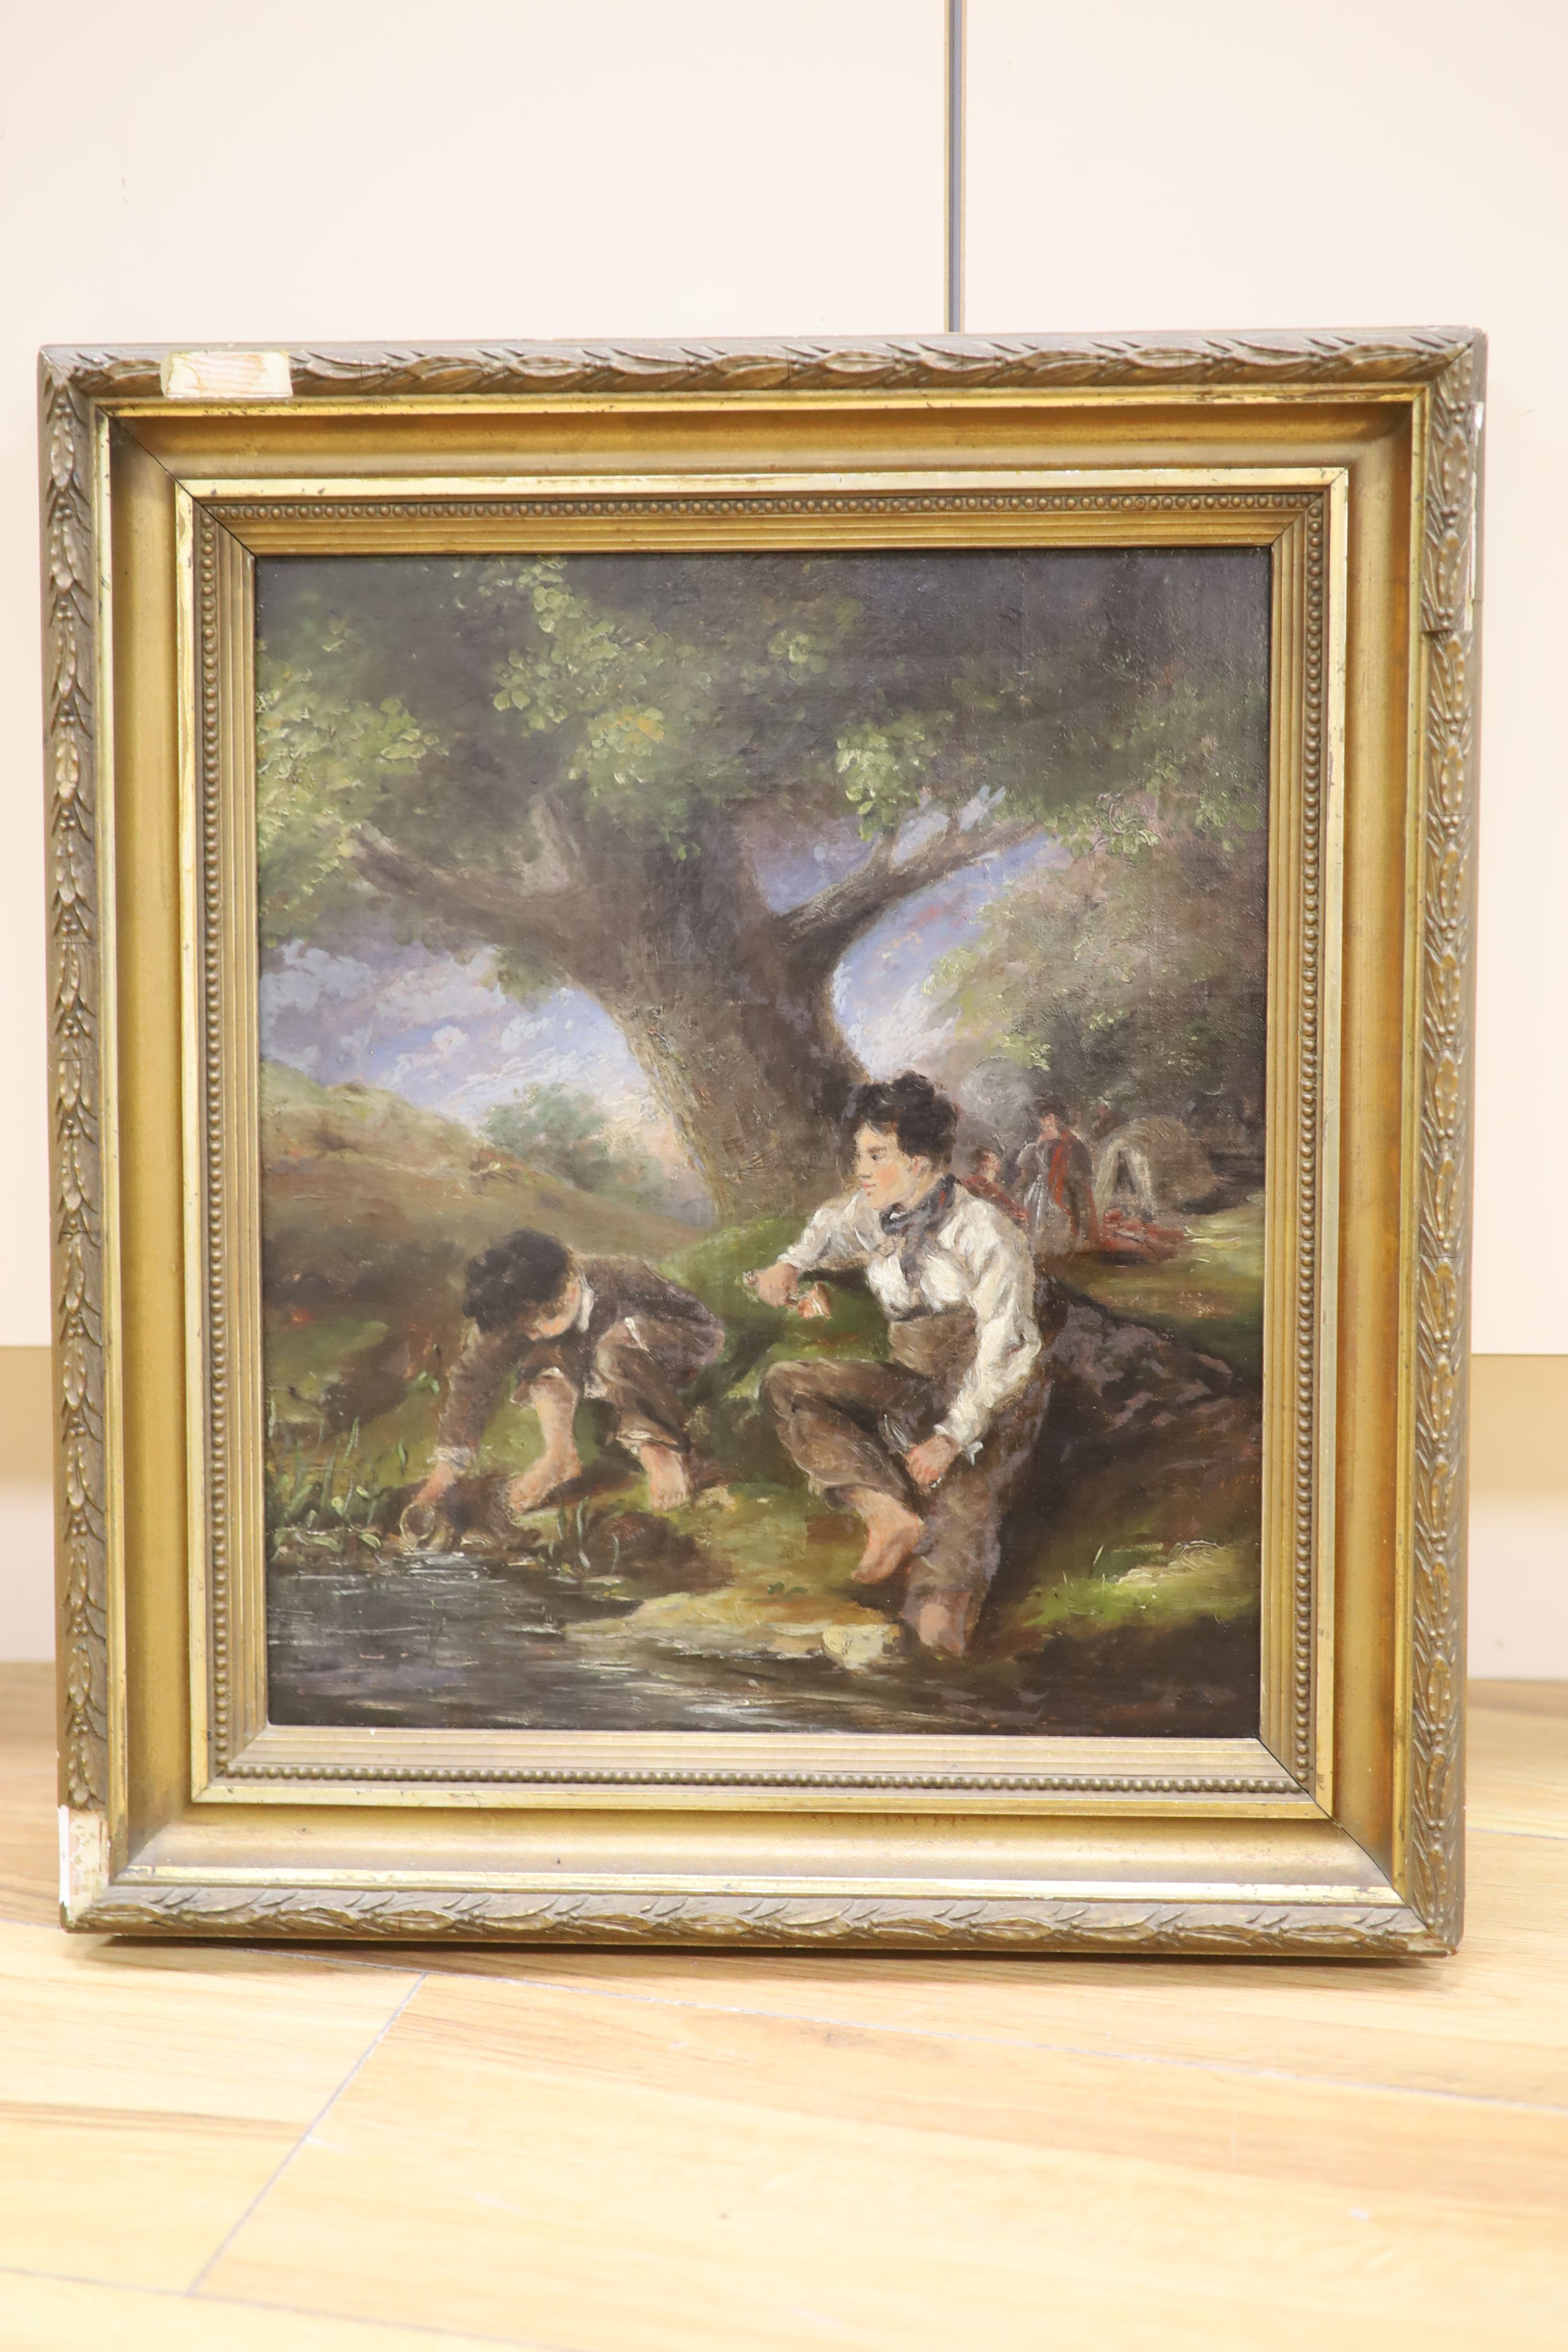 English School c.1880, oil on canvas, Boys beside a stream, 34 x 29cm